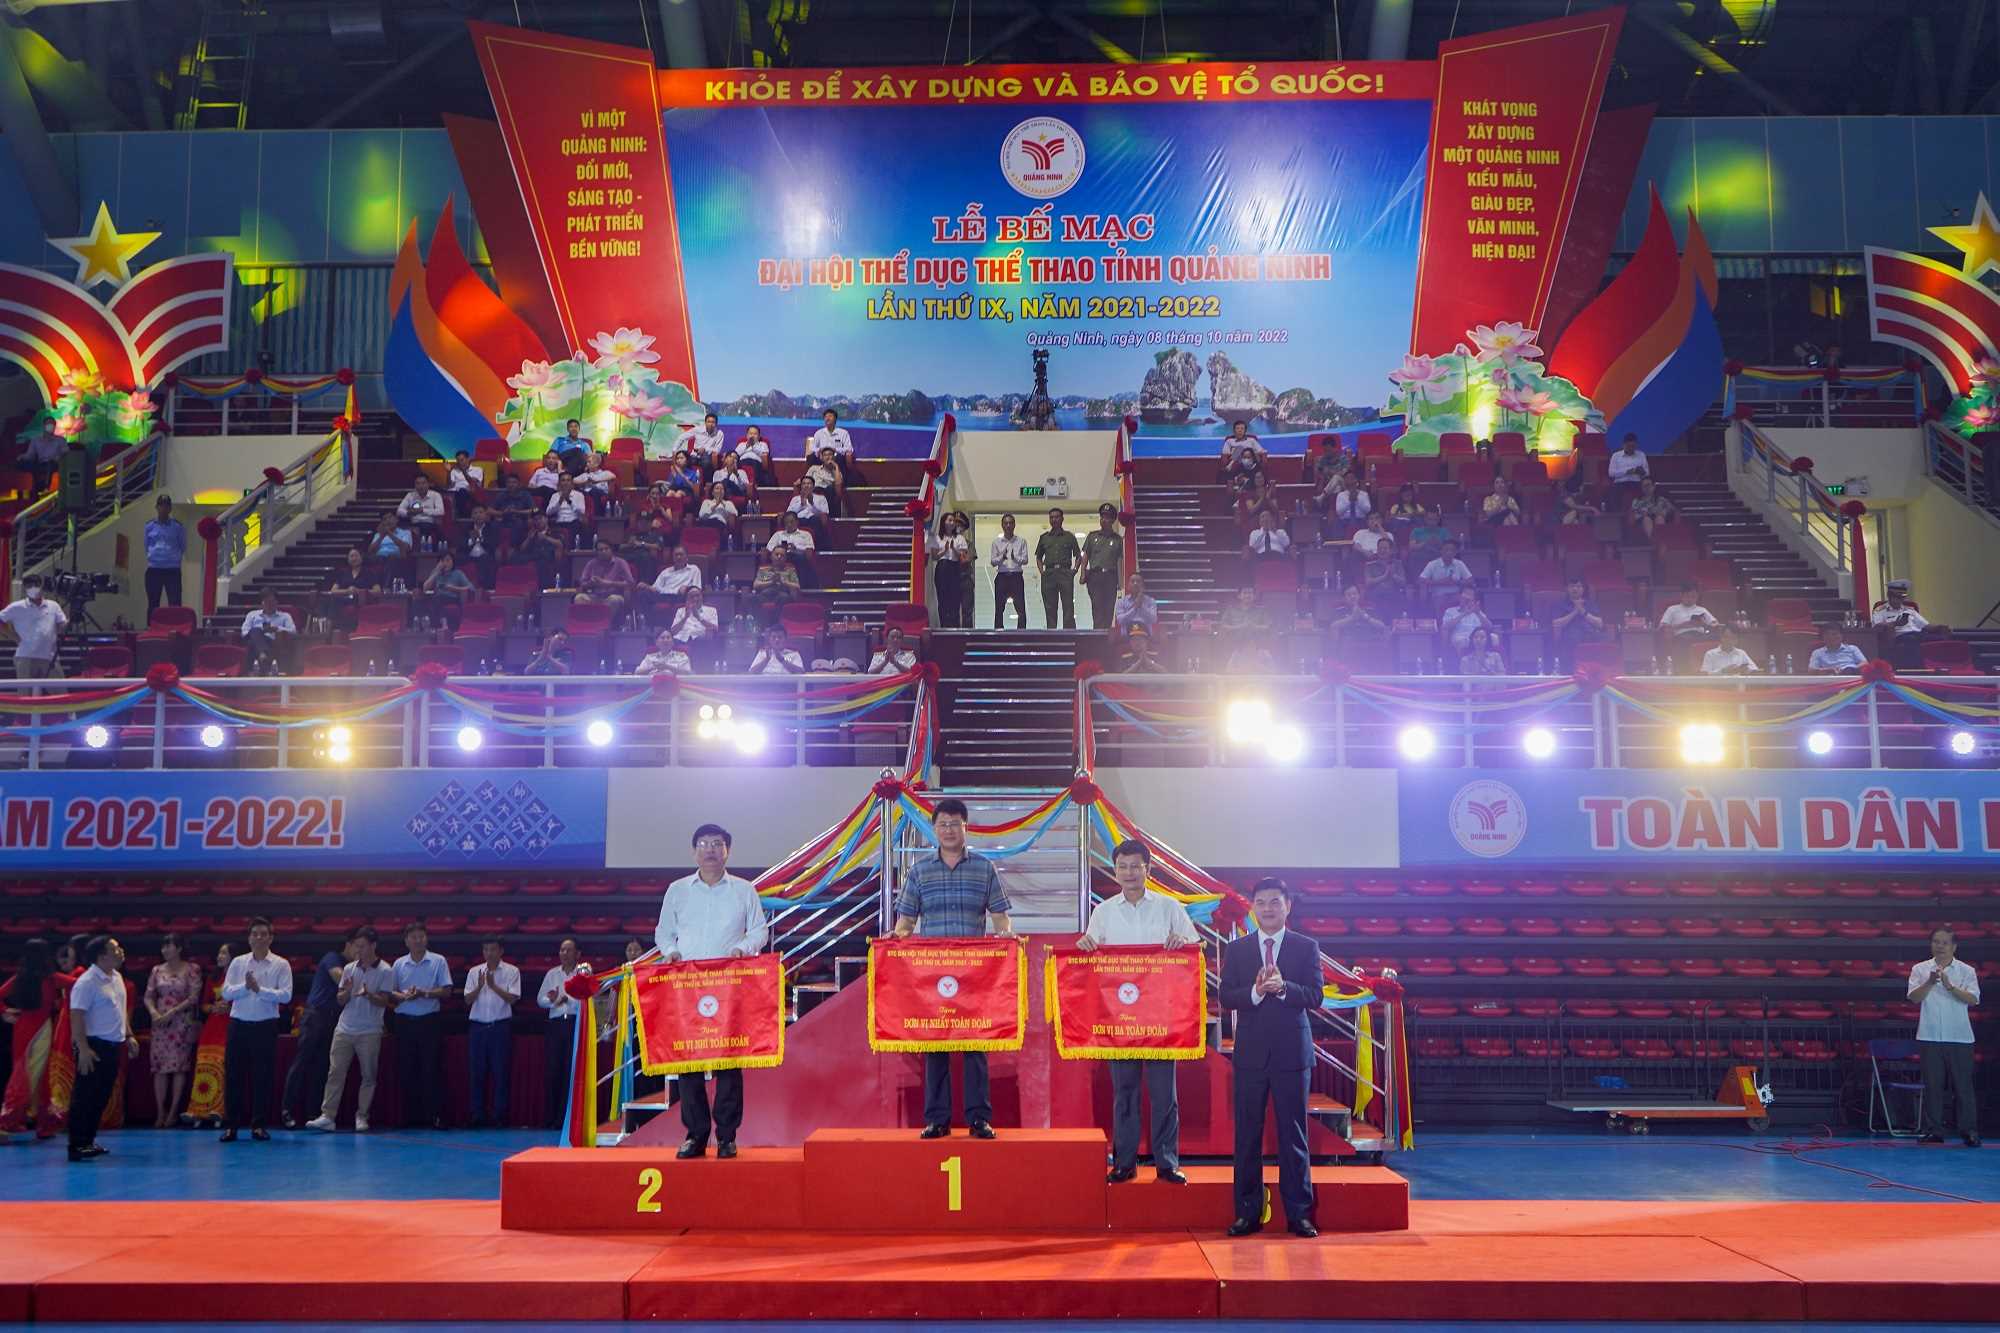 Thể dục thể thao Quảng Ninh vững bước trên chặng đường mới - Ảnh 3.